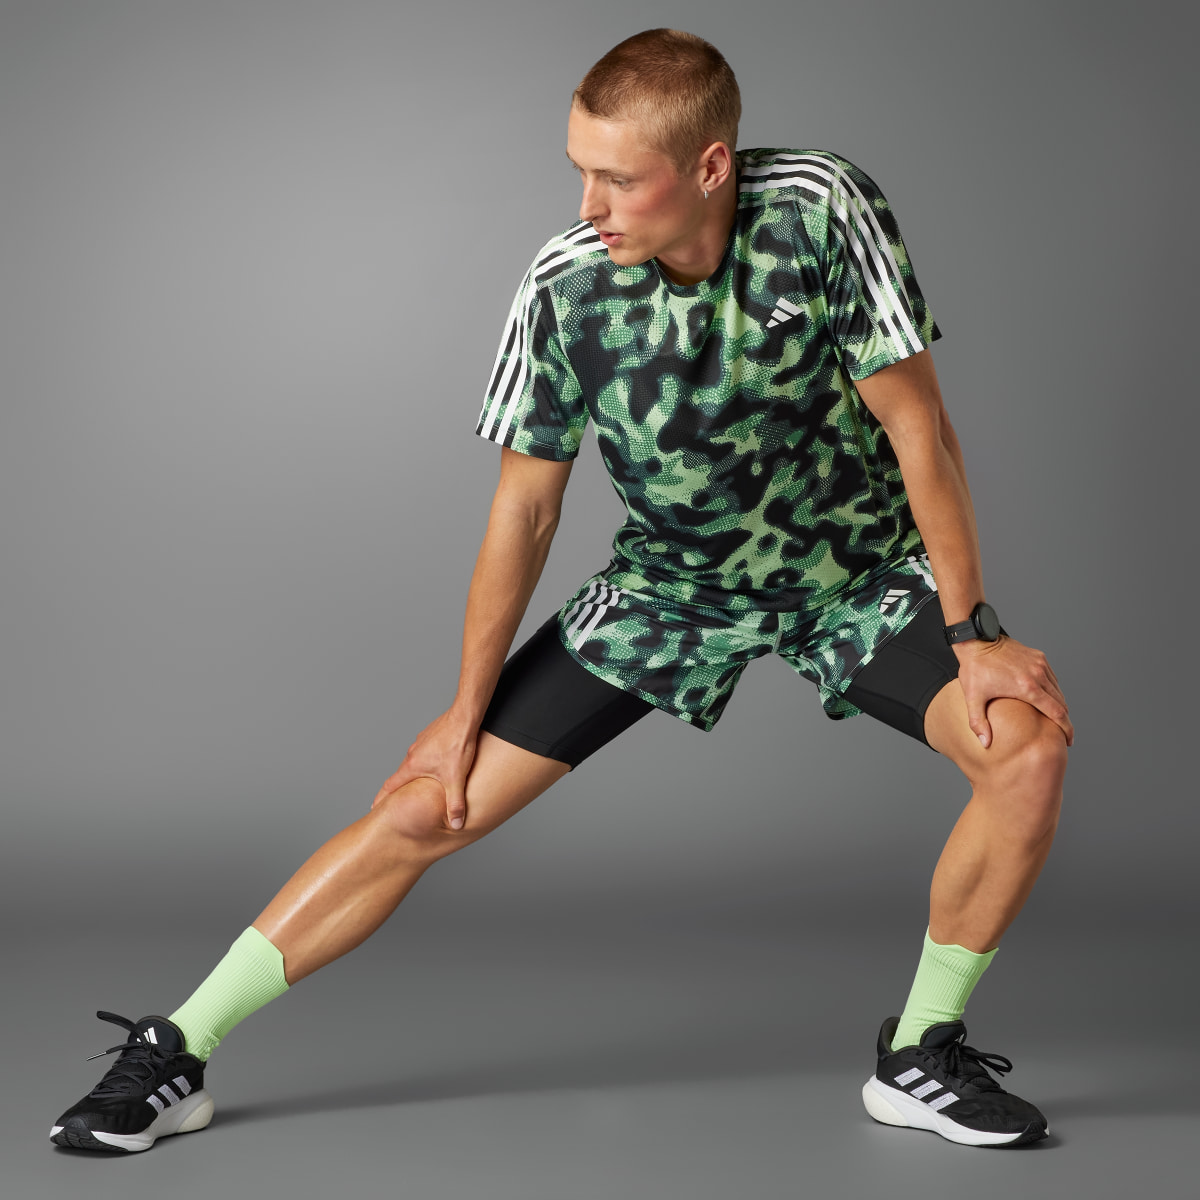 Adidas Own the Run 3-Stripes Allover Print T-Shirt. 5